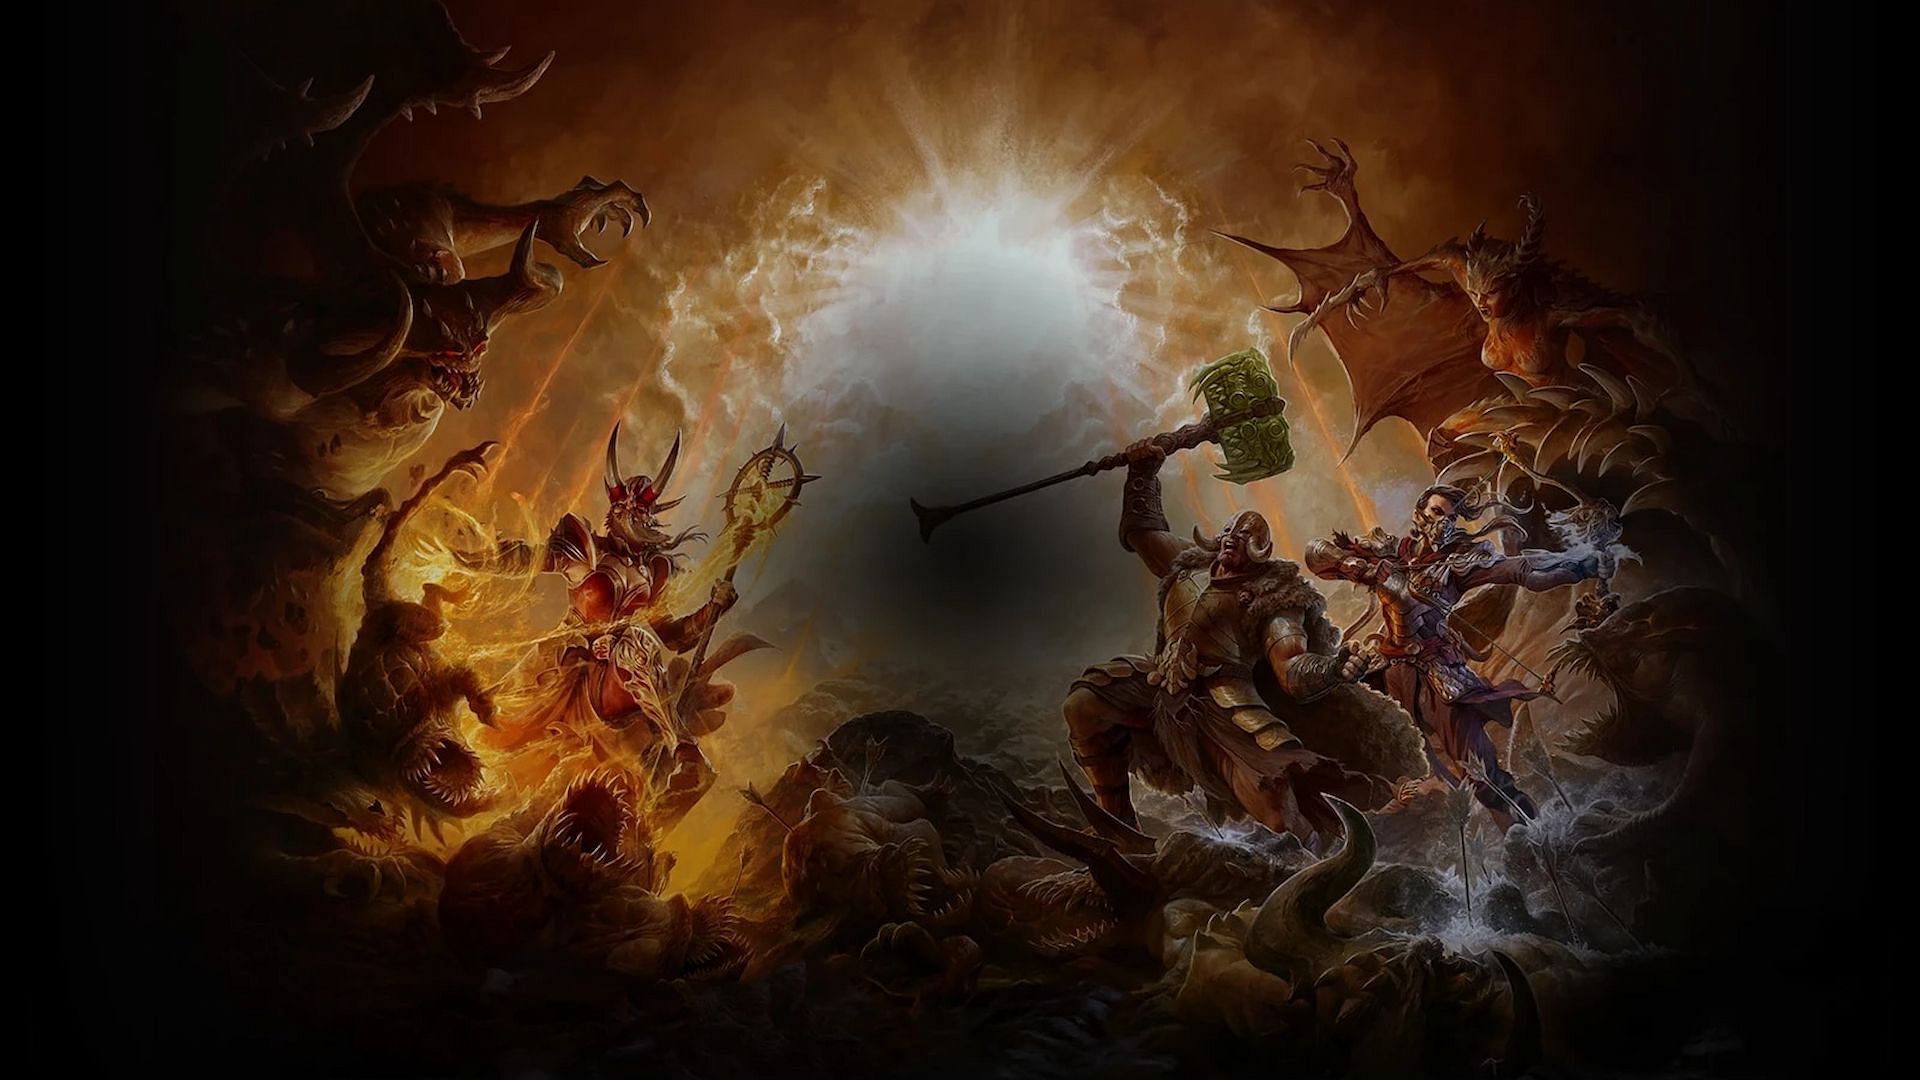 The realms will collide in the new season of Diablo 4 (Image via Blizzard) 